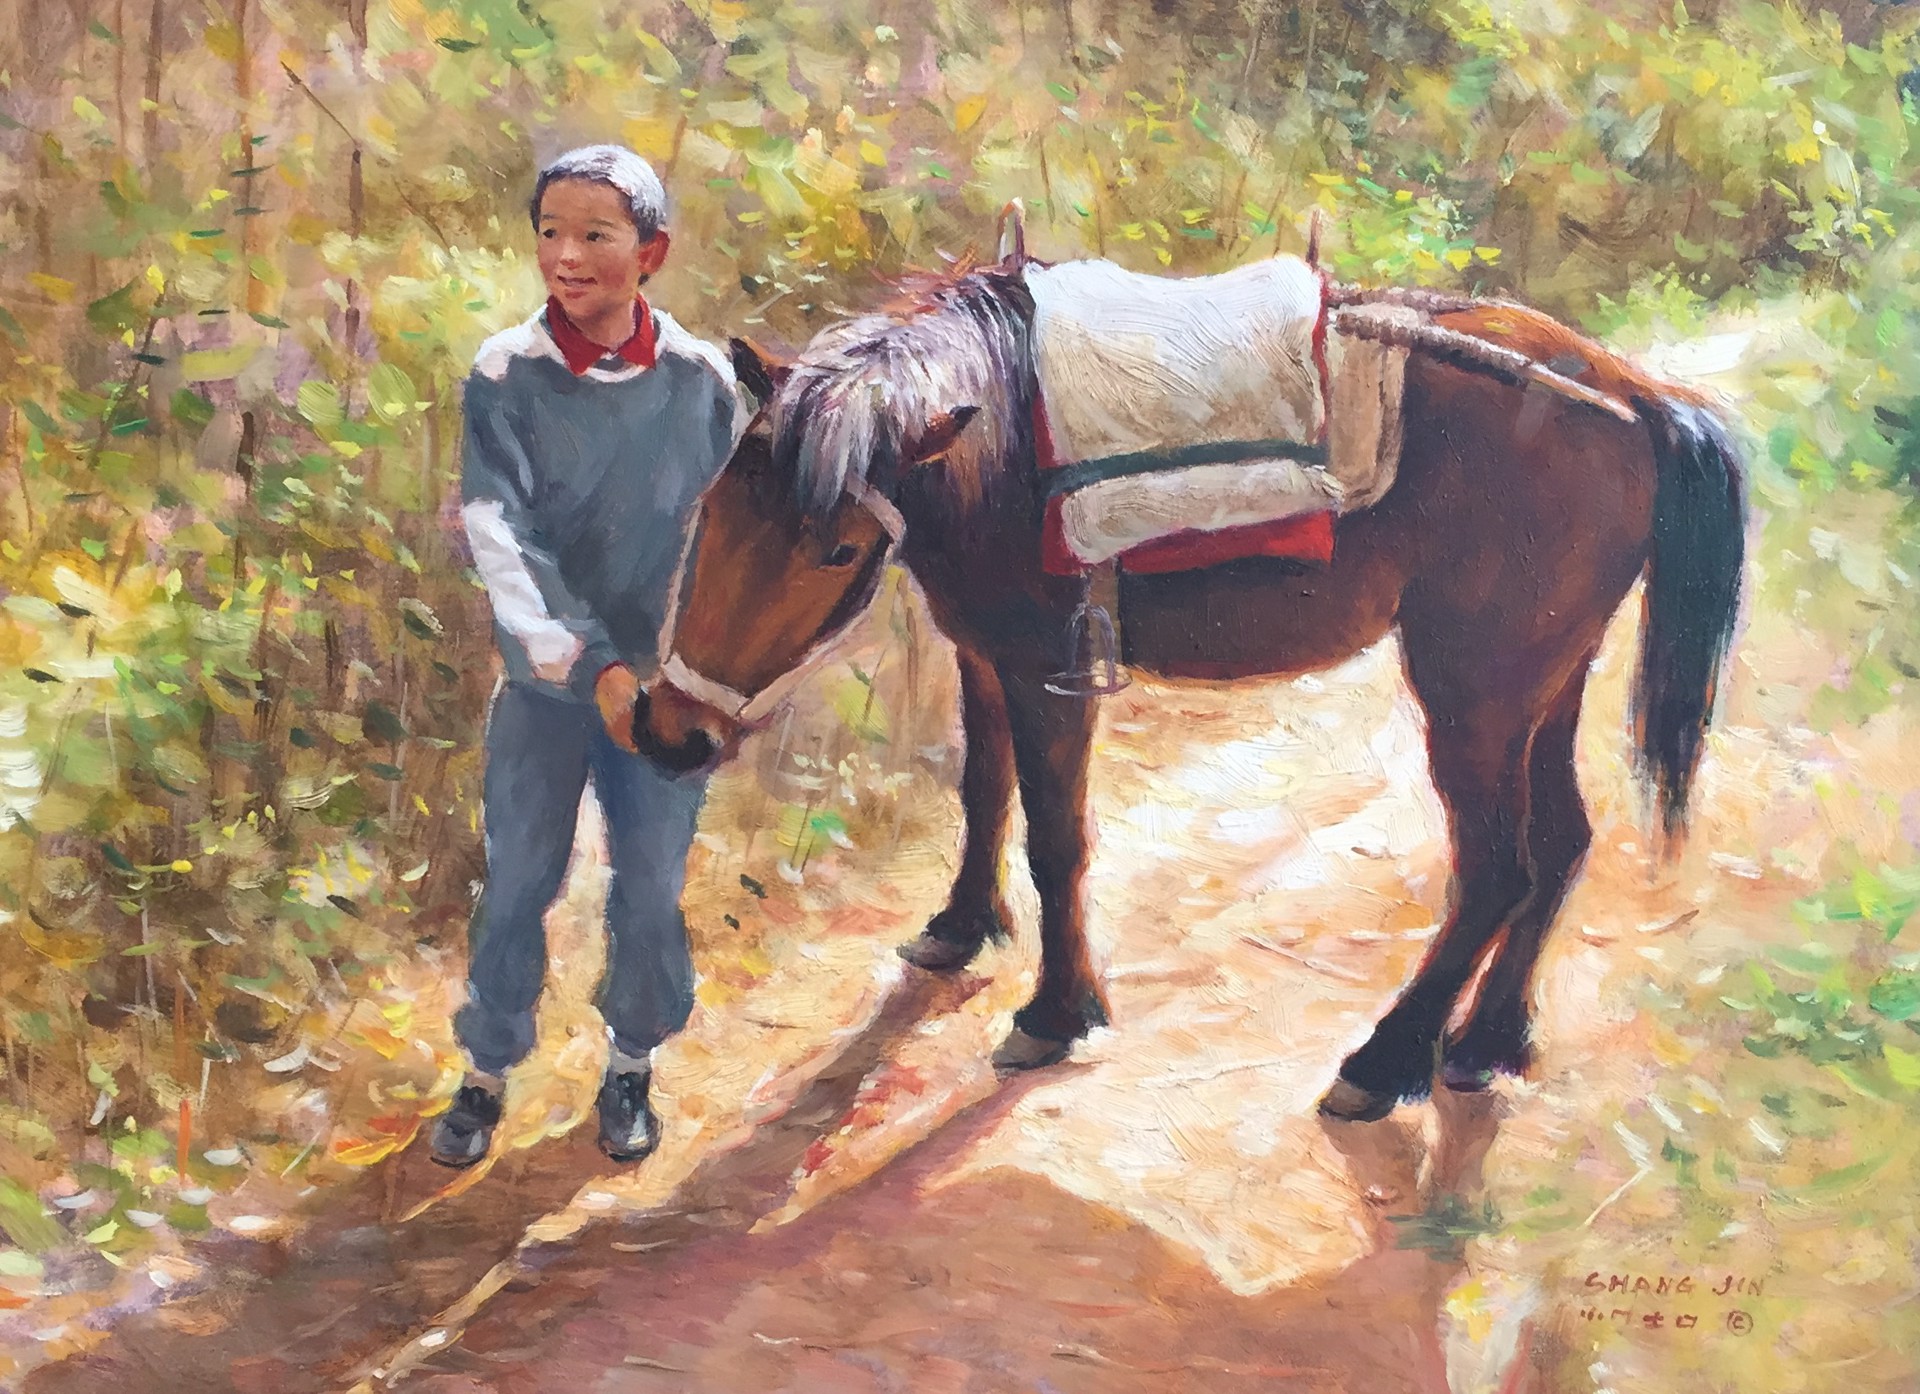 Rural Series 13 by Shang Jin